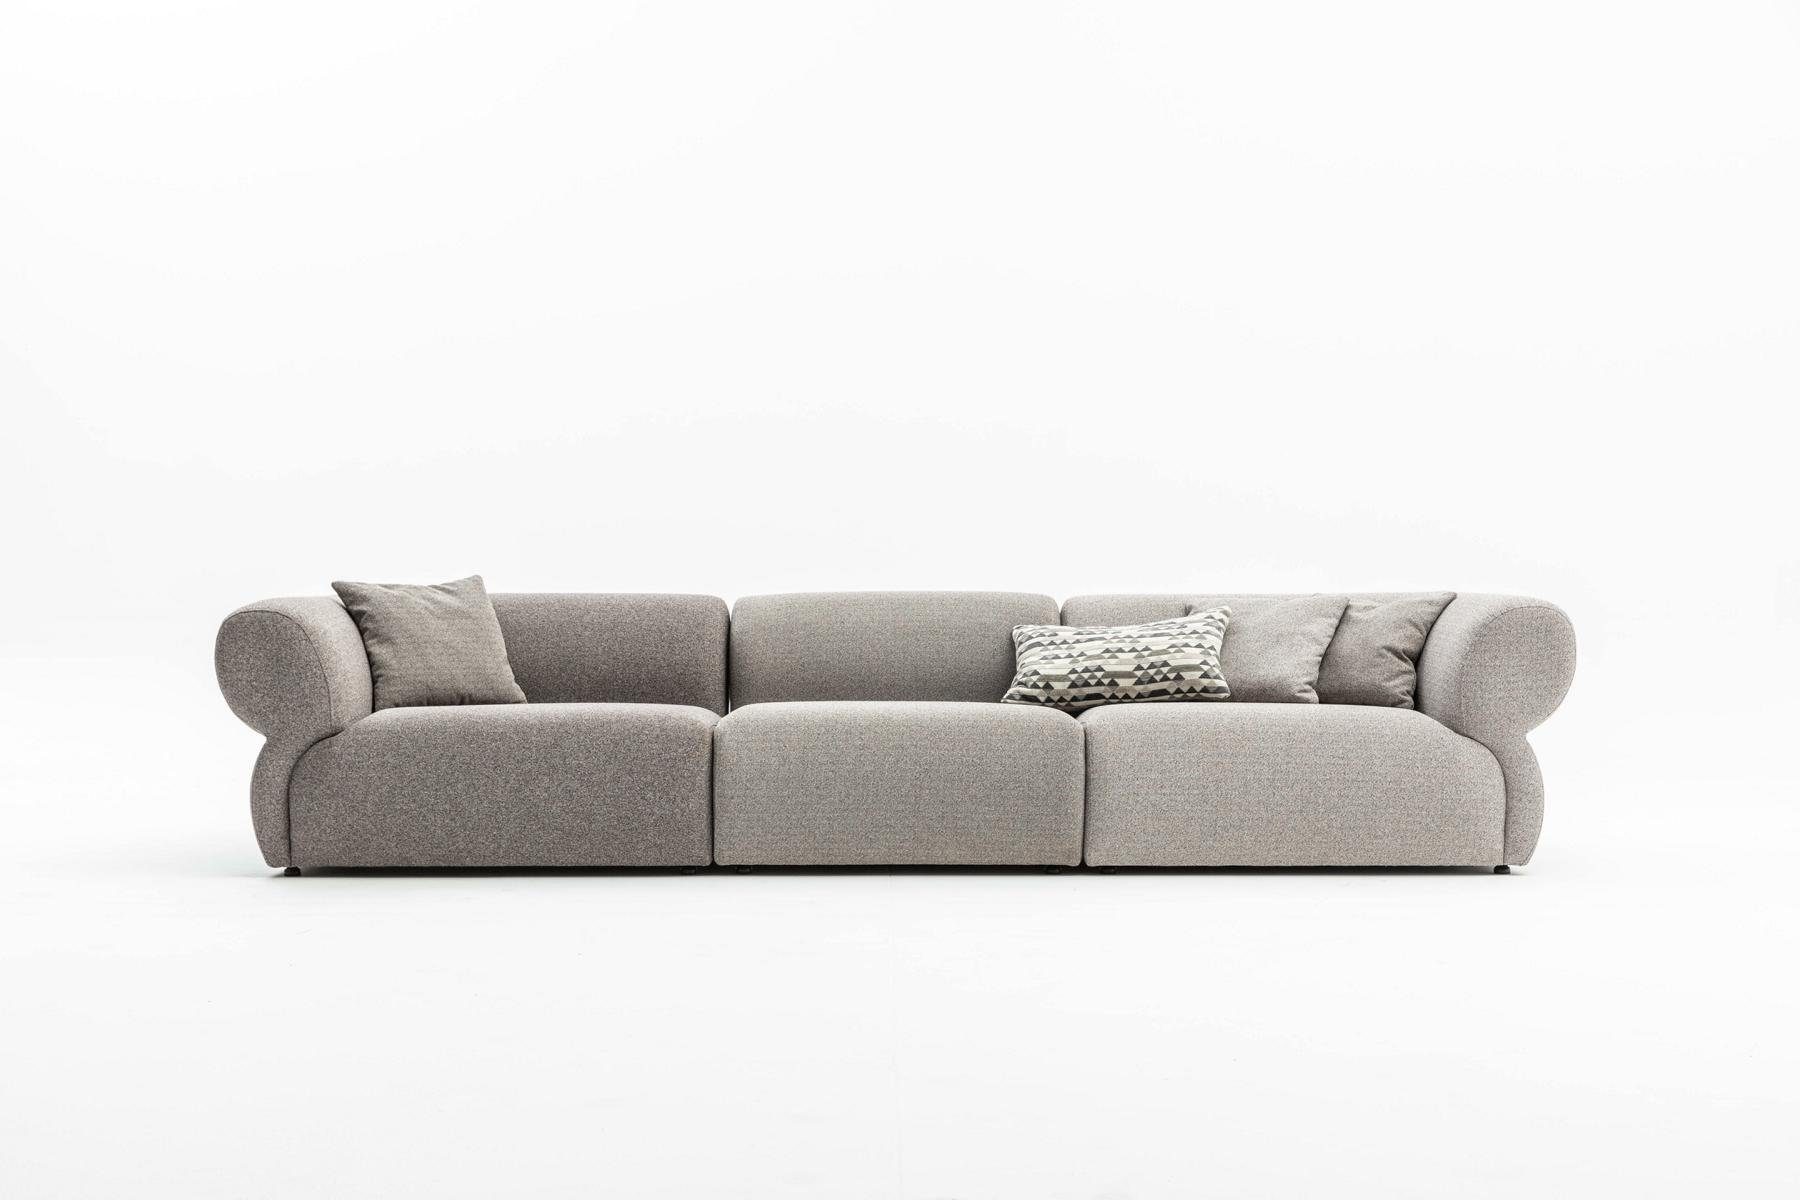 Sofa 5 Möbel Design Sitzer 370cm, Couch JVmoebel Luxus Grau Big-Sofa Wohnzimmer Europe in Made